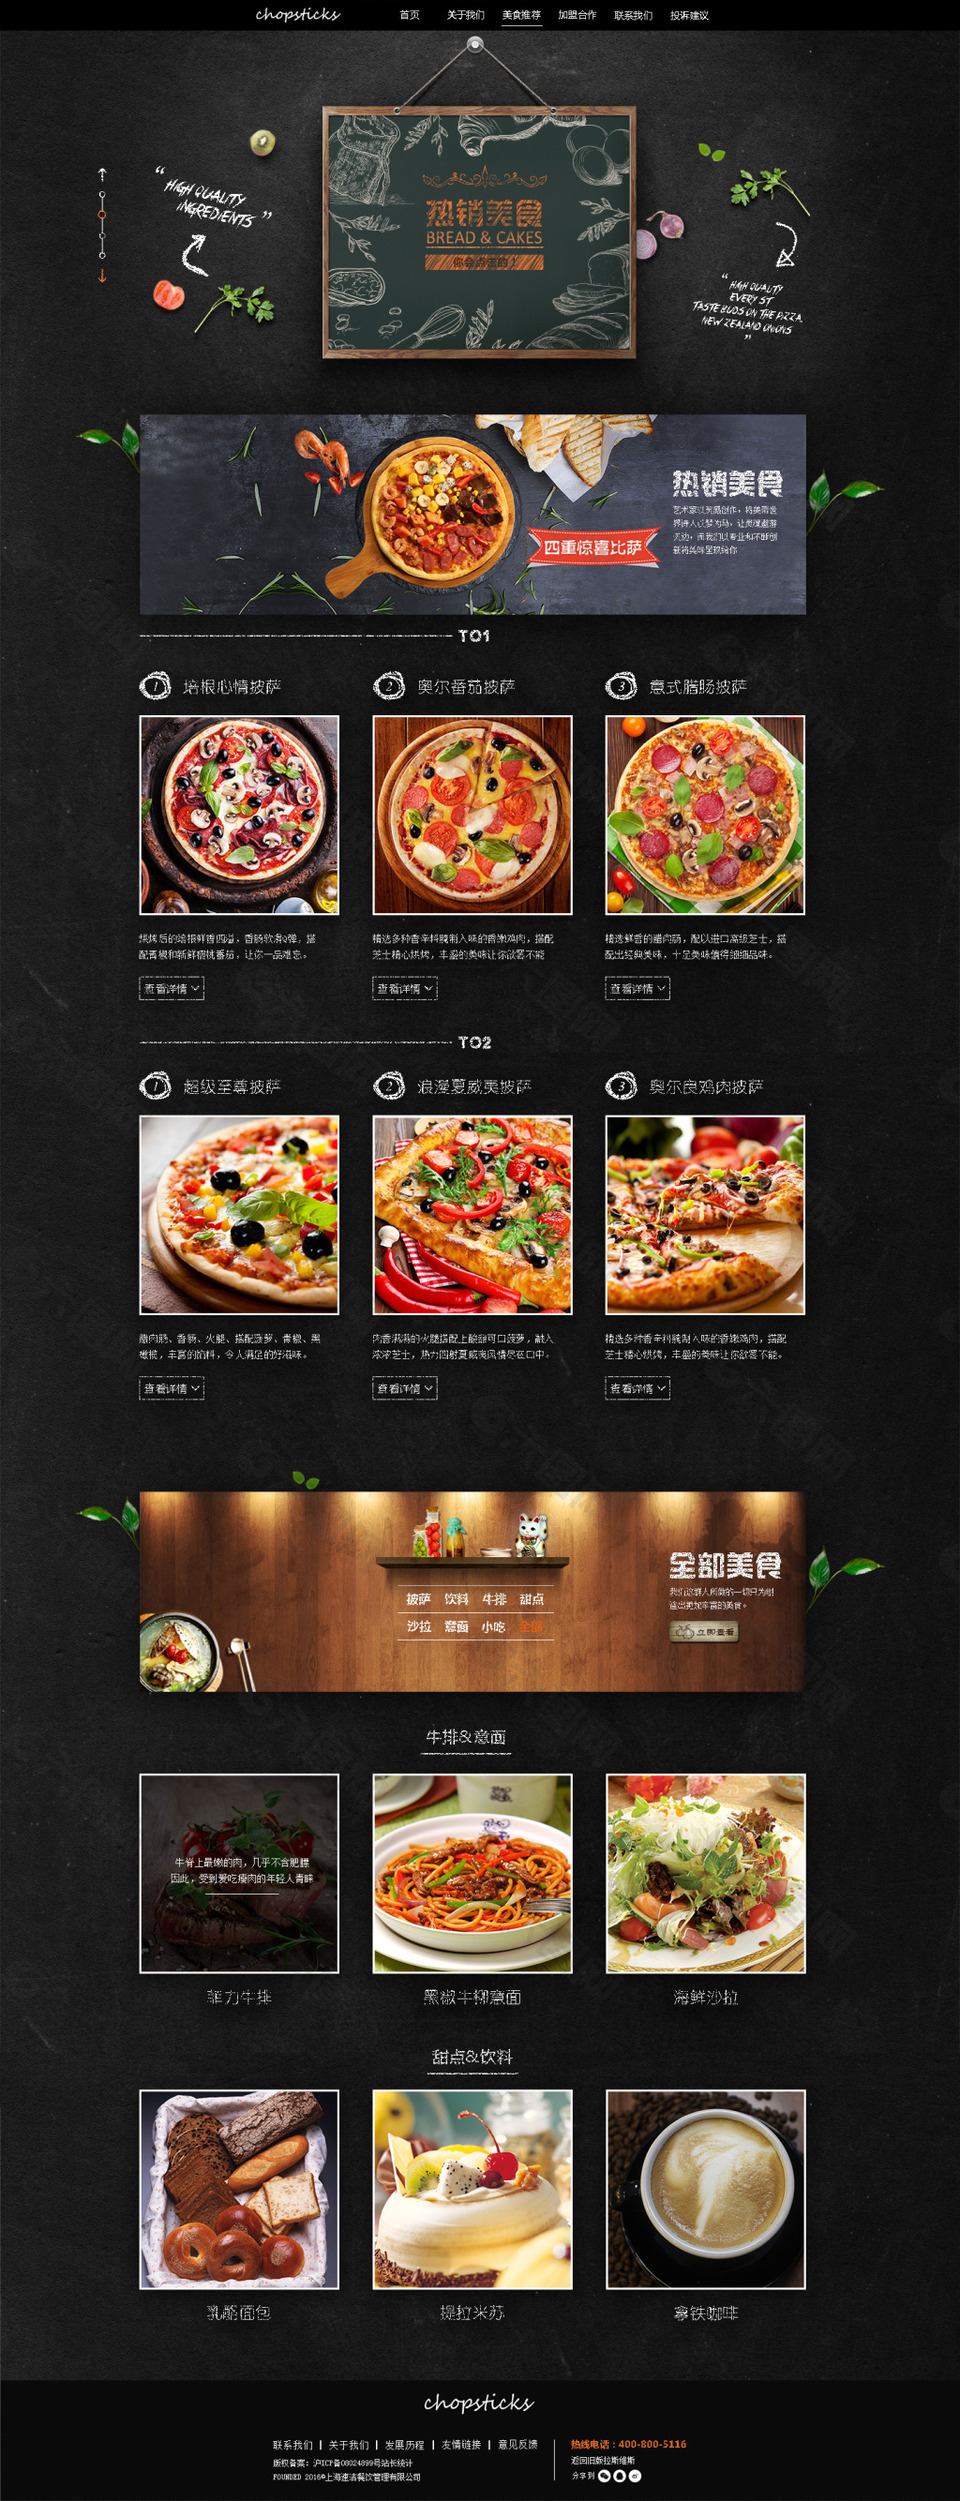 美食网站 美食网页 美食素材 披萨